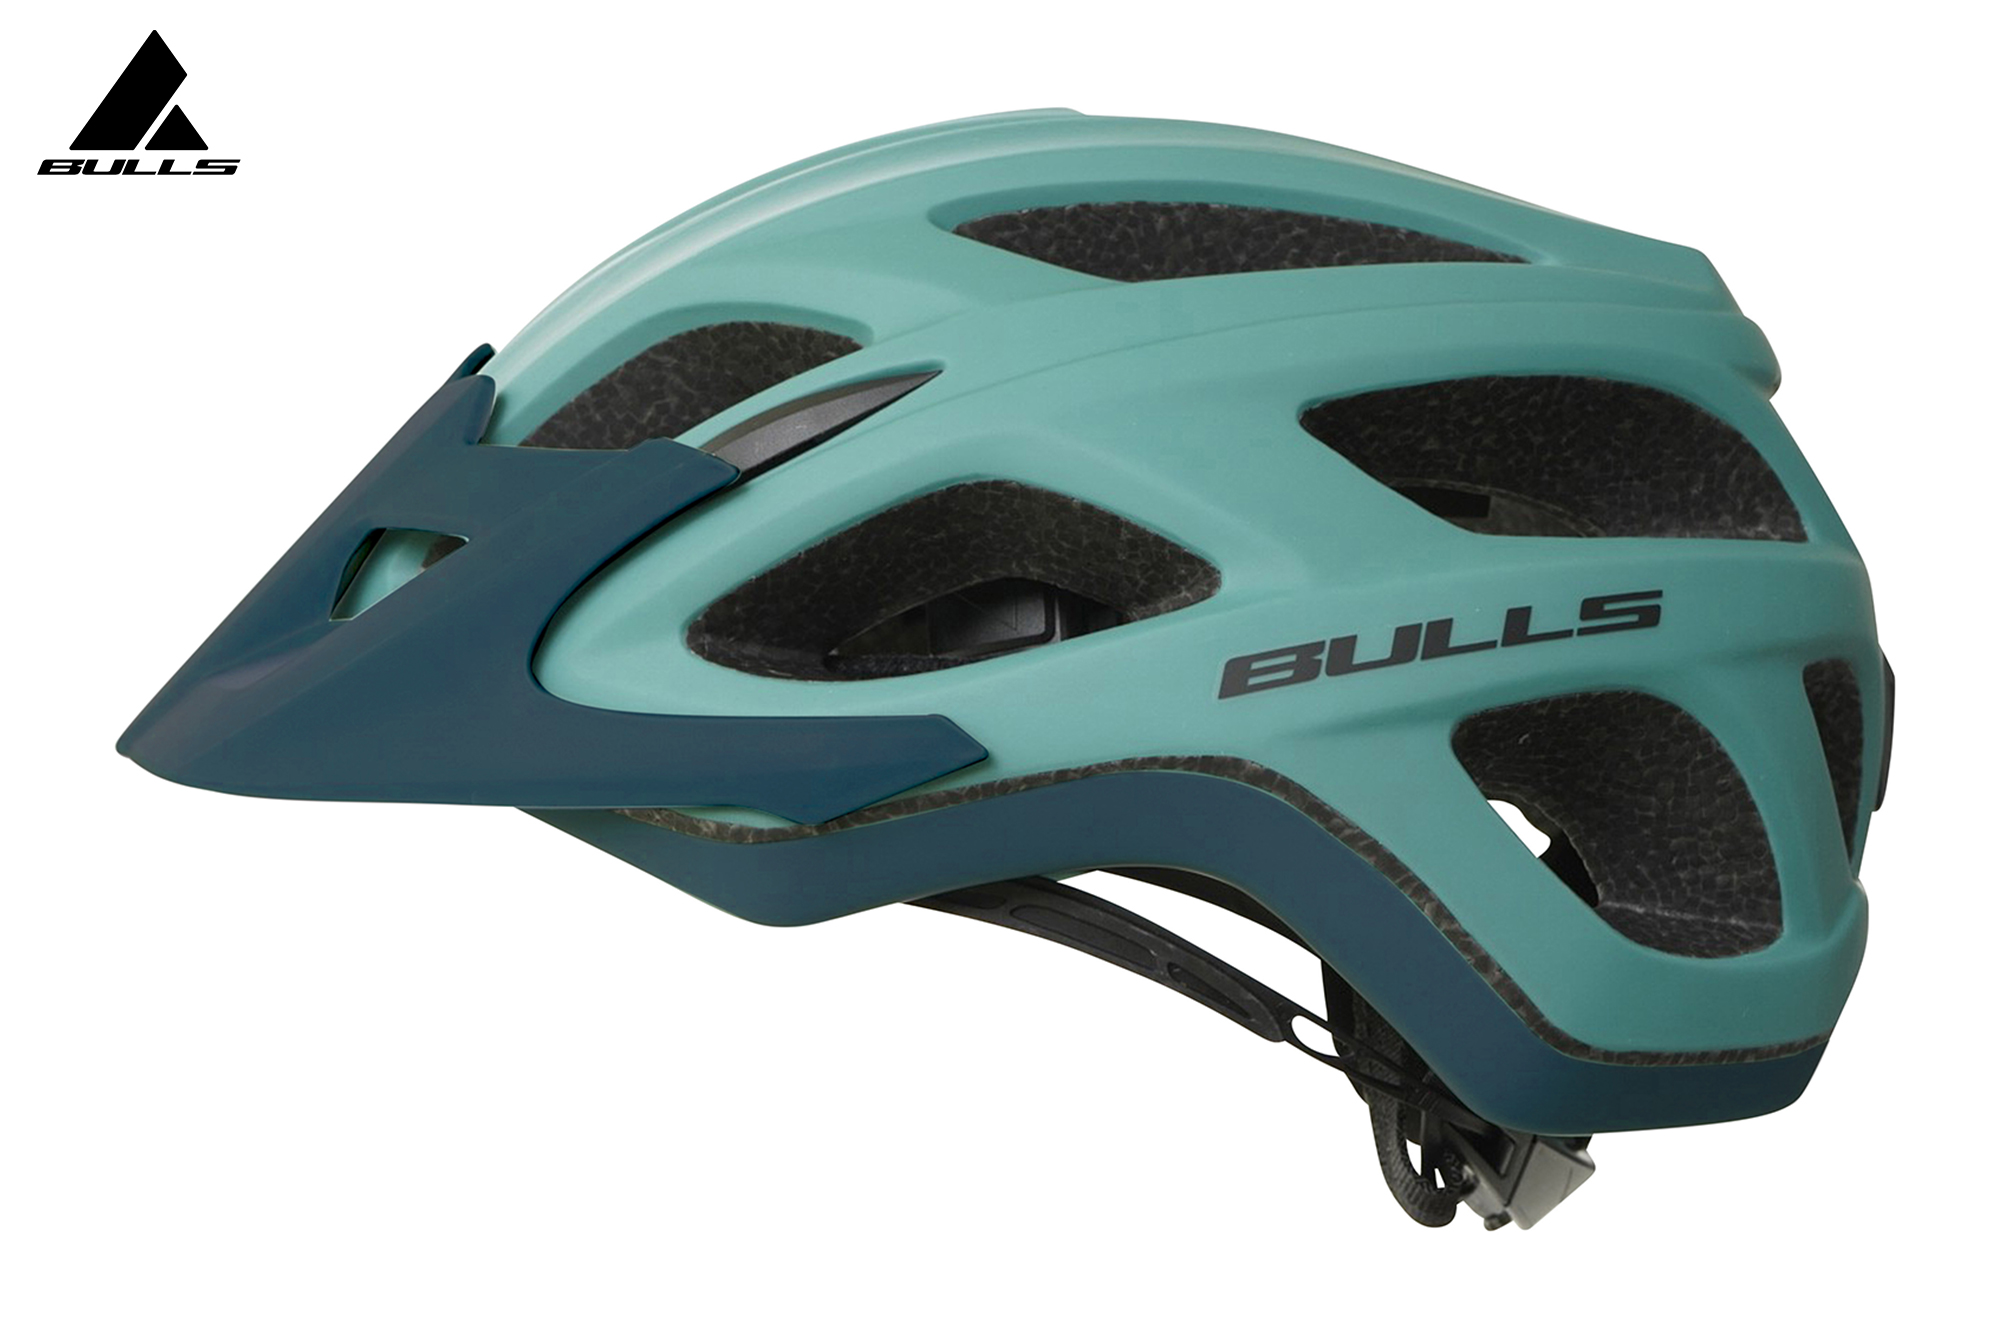 BULLS Helm Copperhead RS - grün